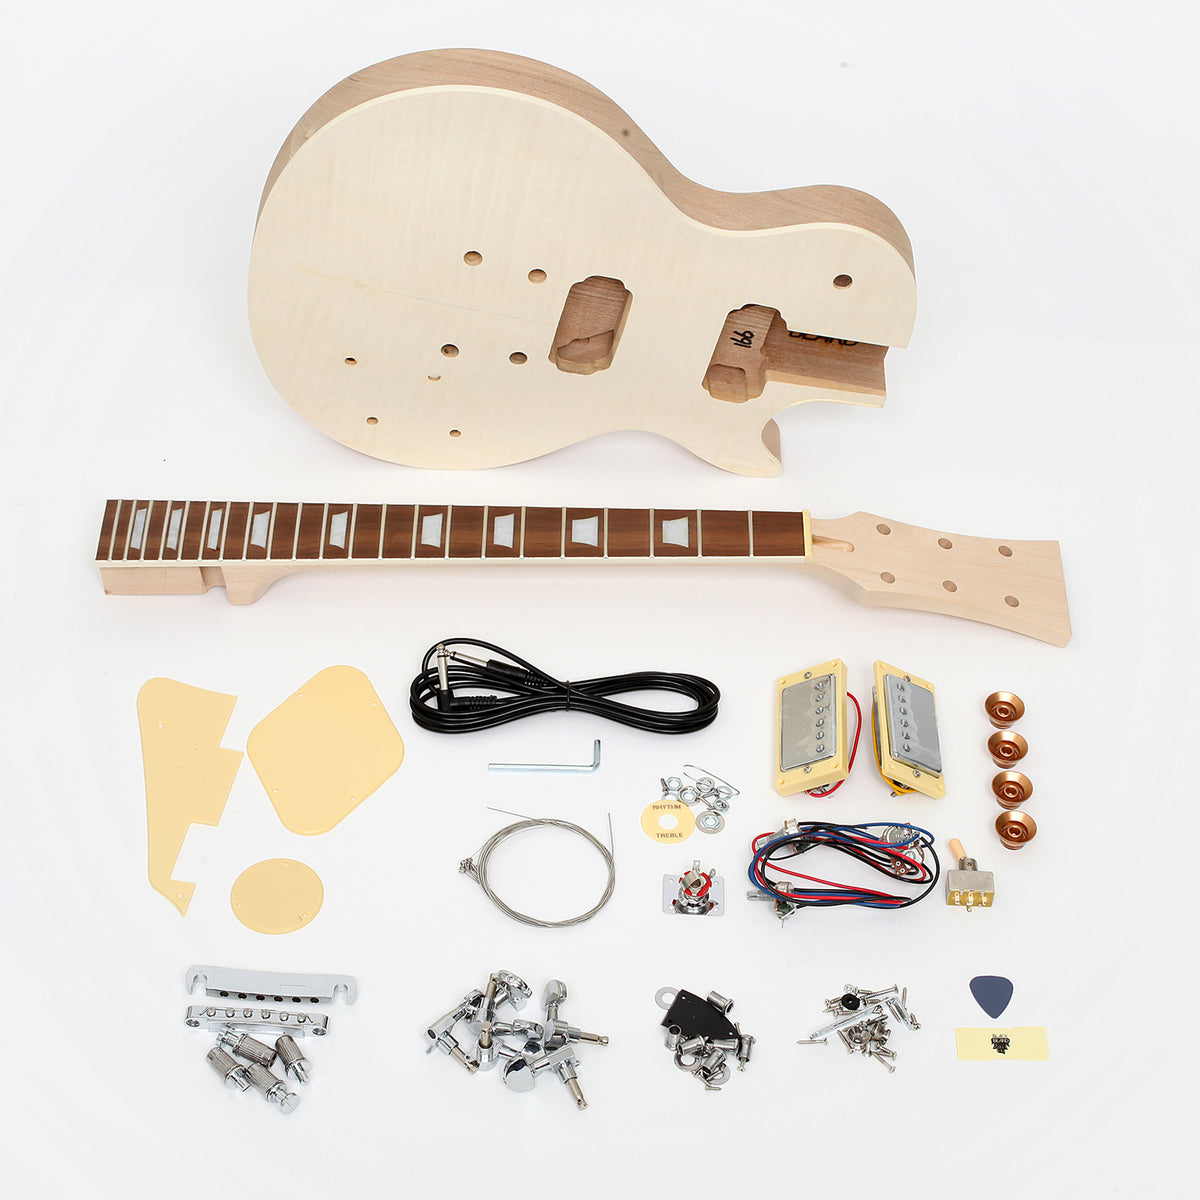 Les Paul Set-In Neck DIY Guitar All